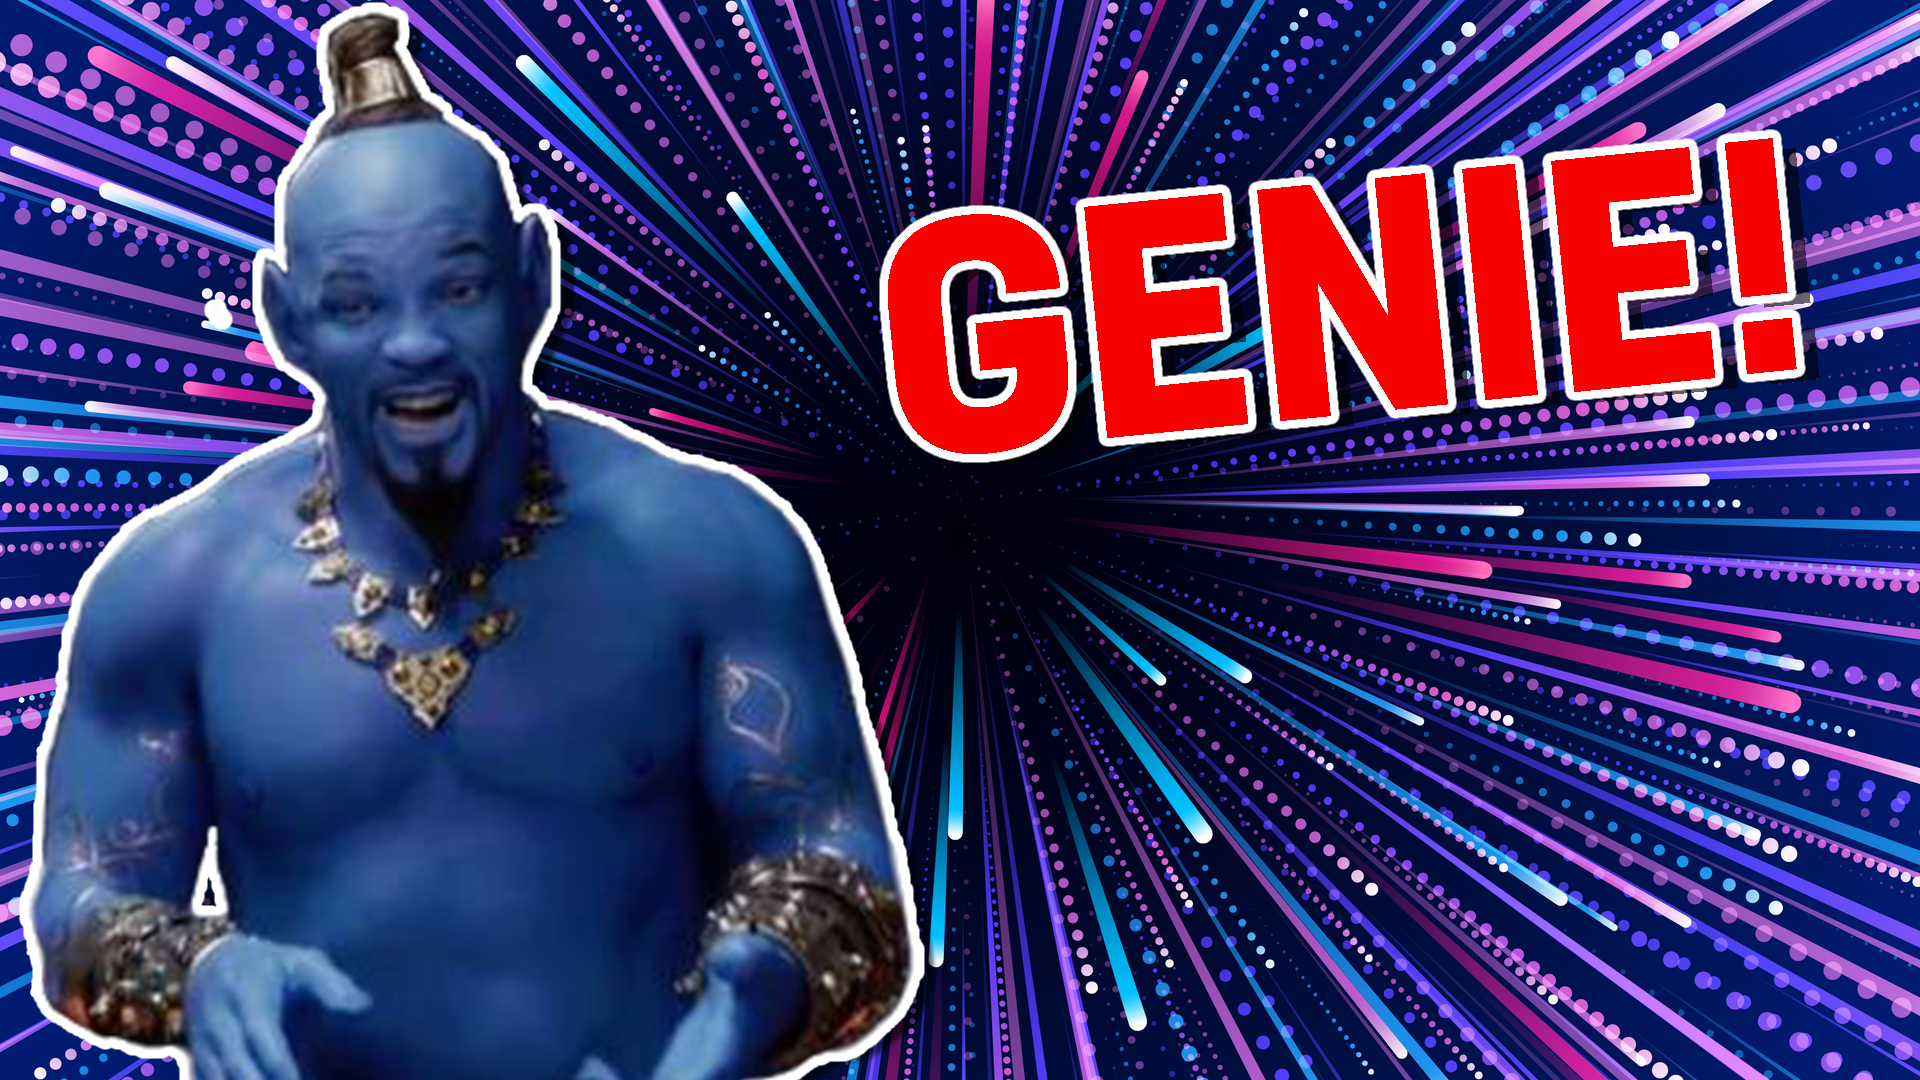 The Genie from Aladdin